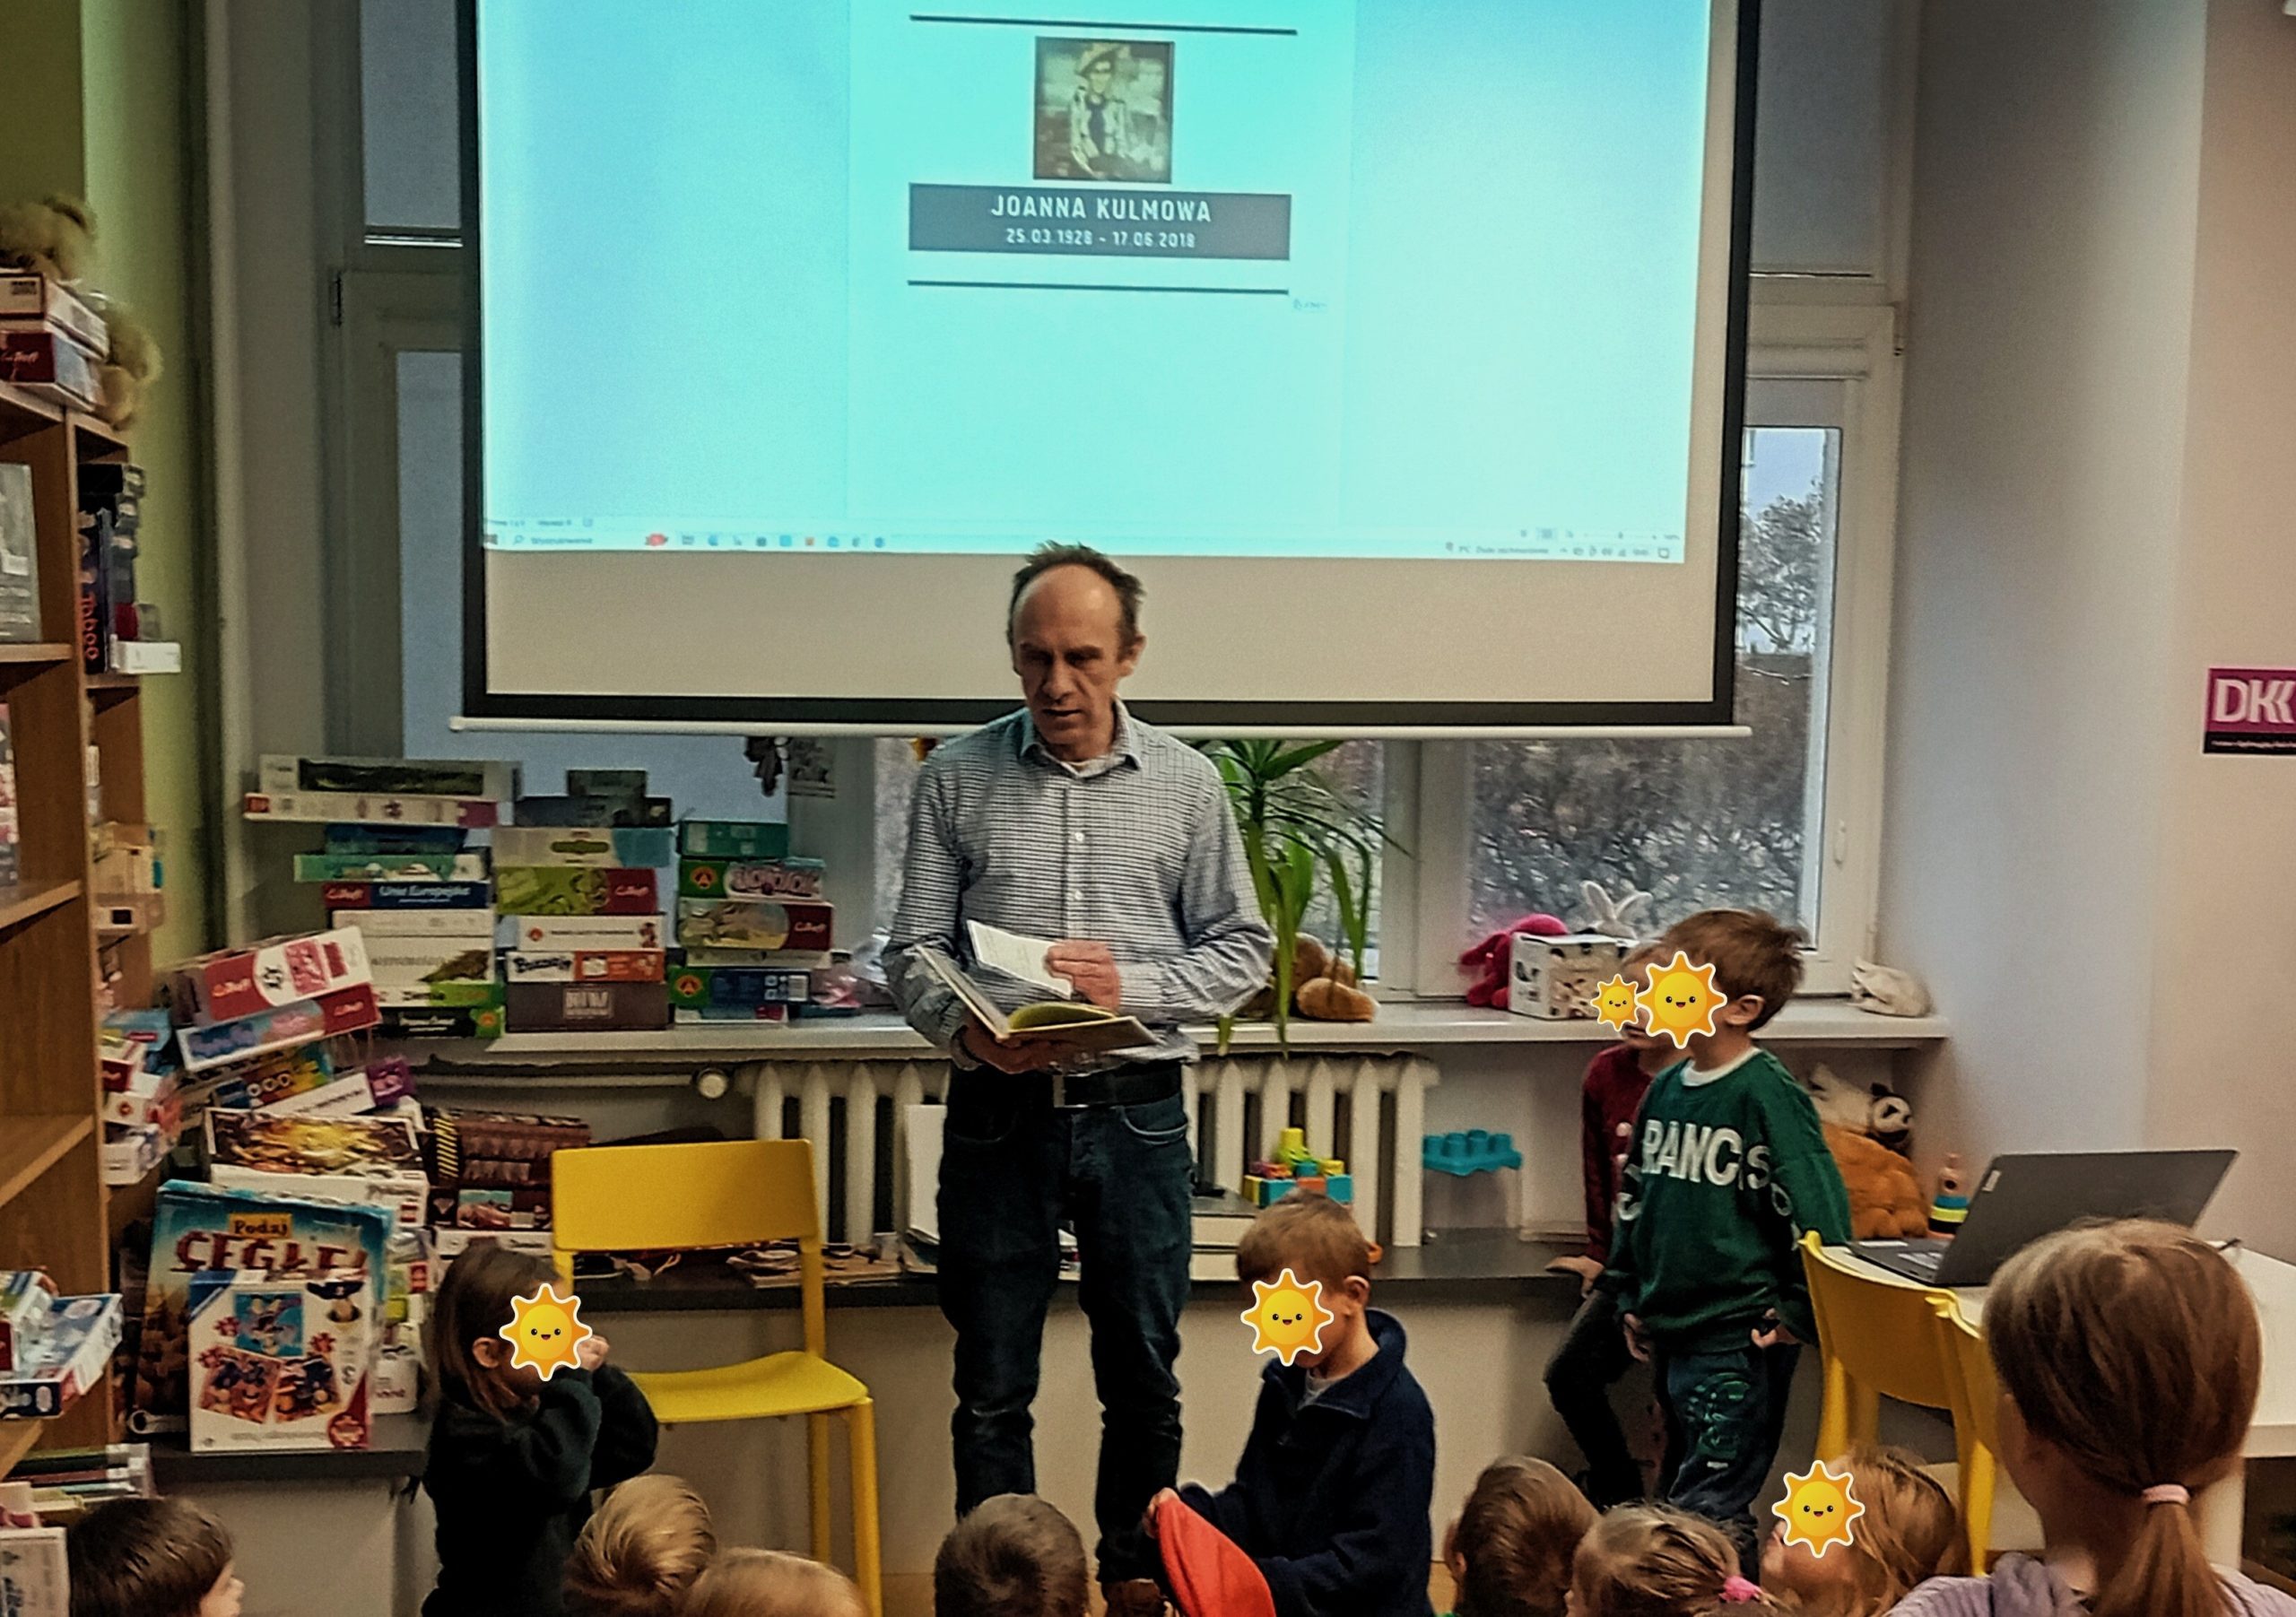 grafika wyróżniająca przedstawiająca bibliotekarza na tle ekranu, na którym widnieje portret Joanny Kulmowej. Przedstawia grupie dzieci jaki jest temat spotkania.